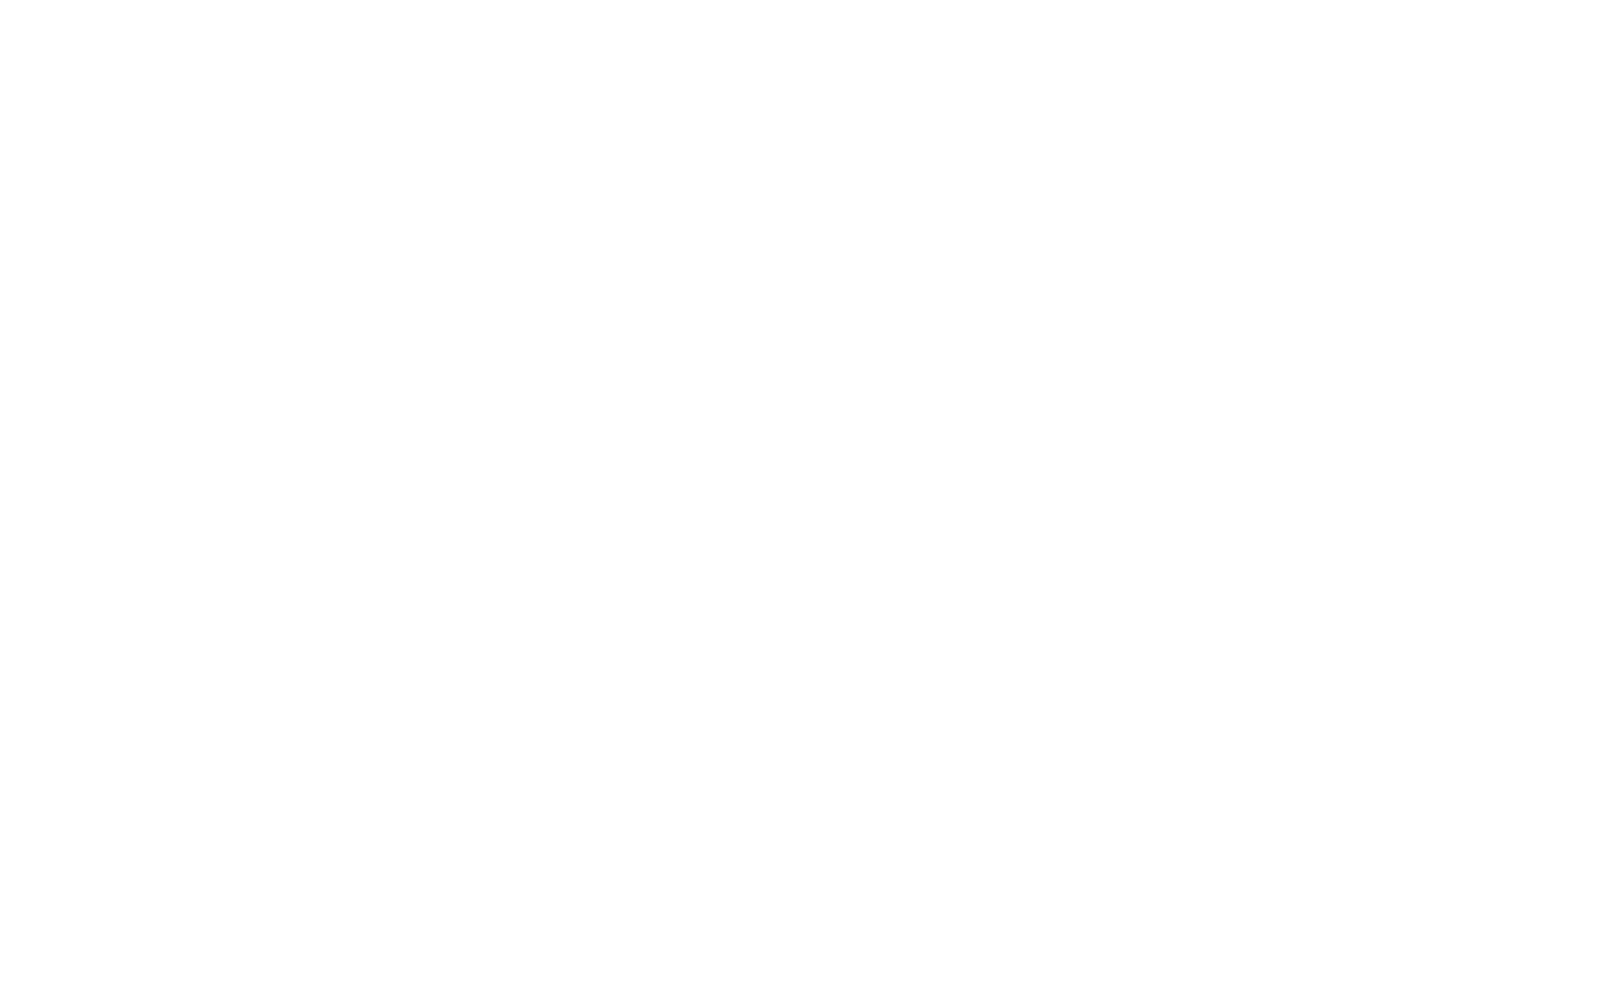 Merlino Media Group logo